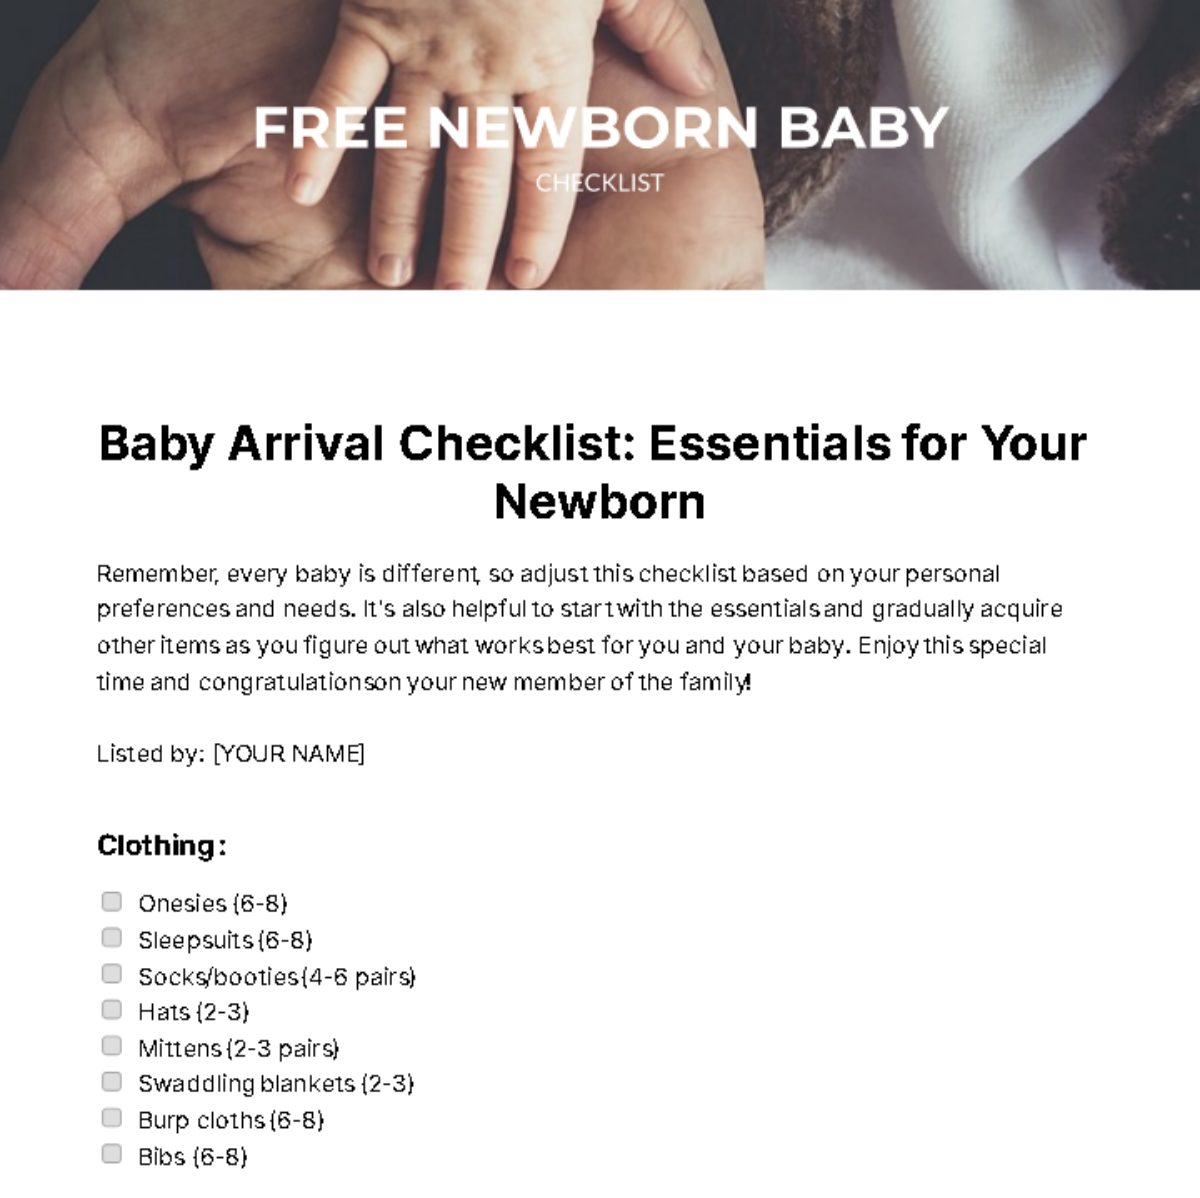 Free Newborn Baby Checklist Template